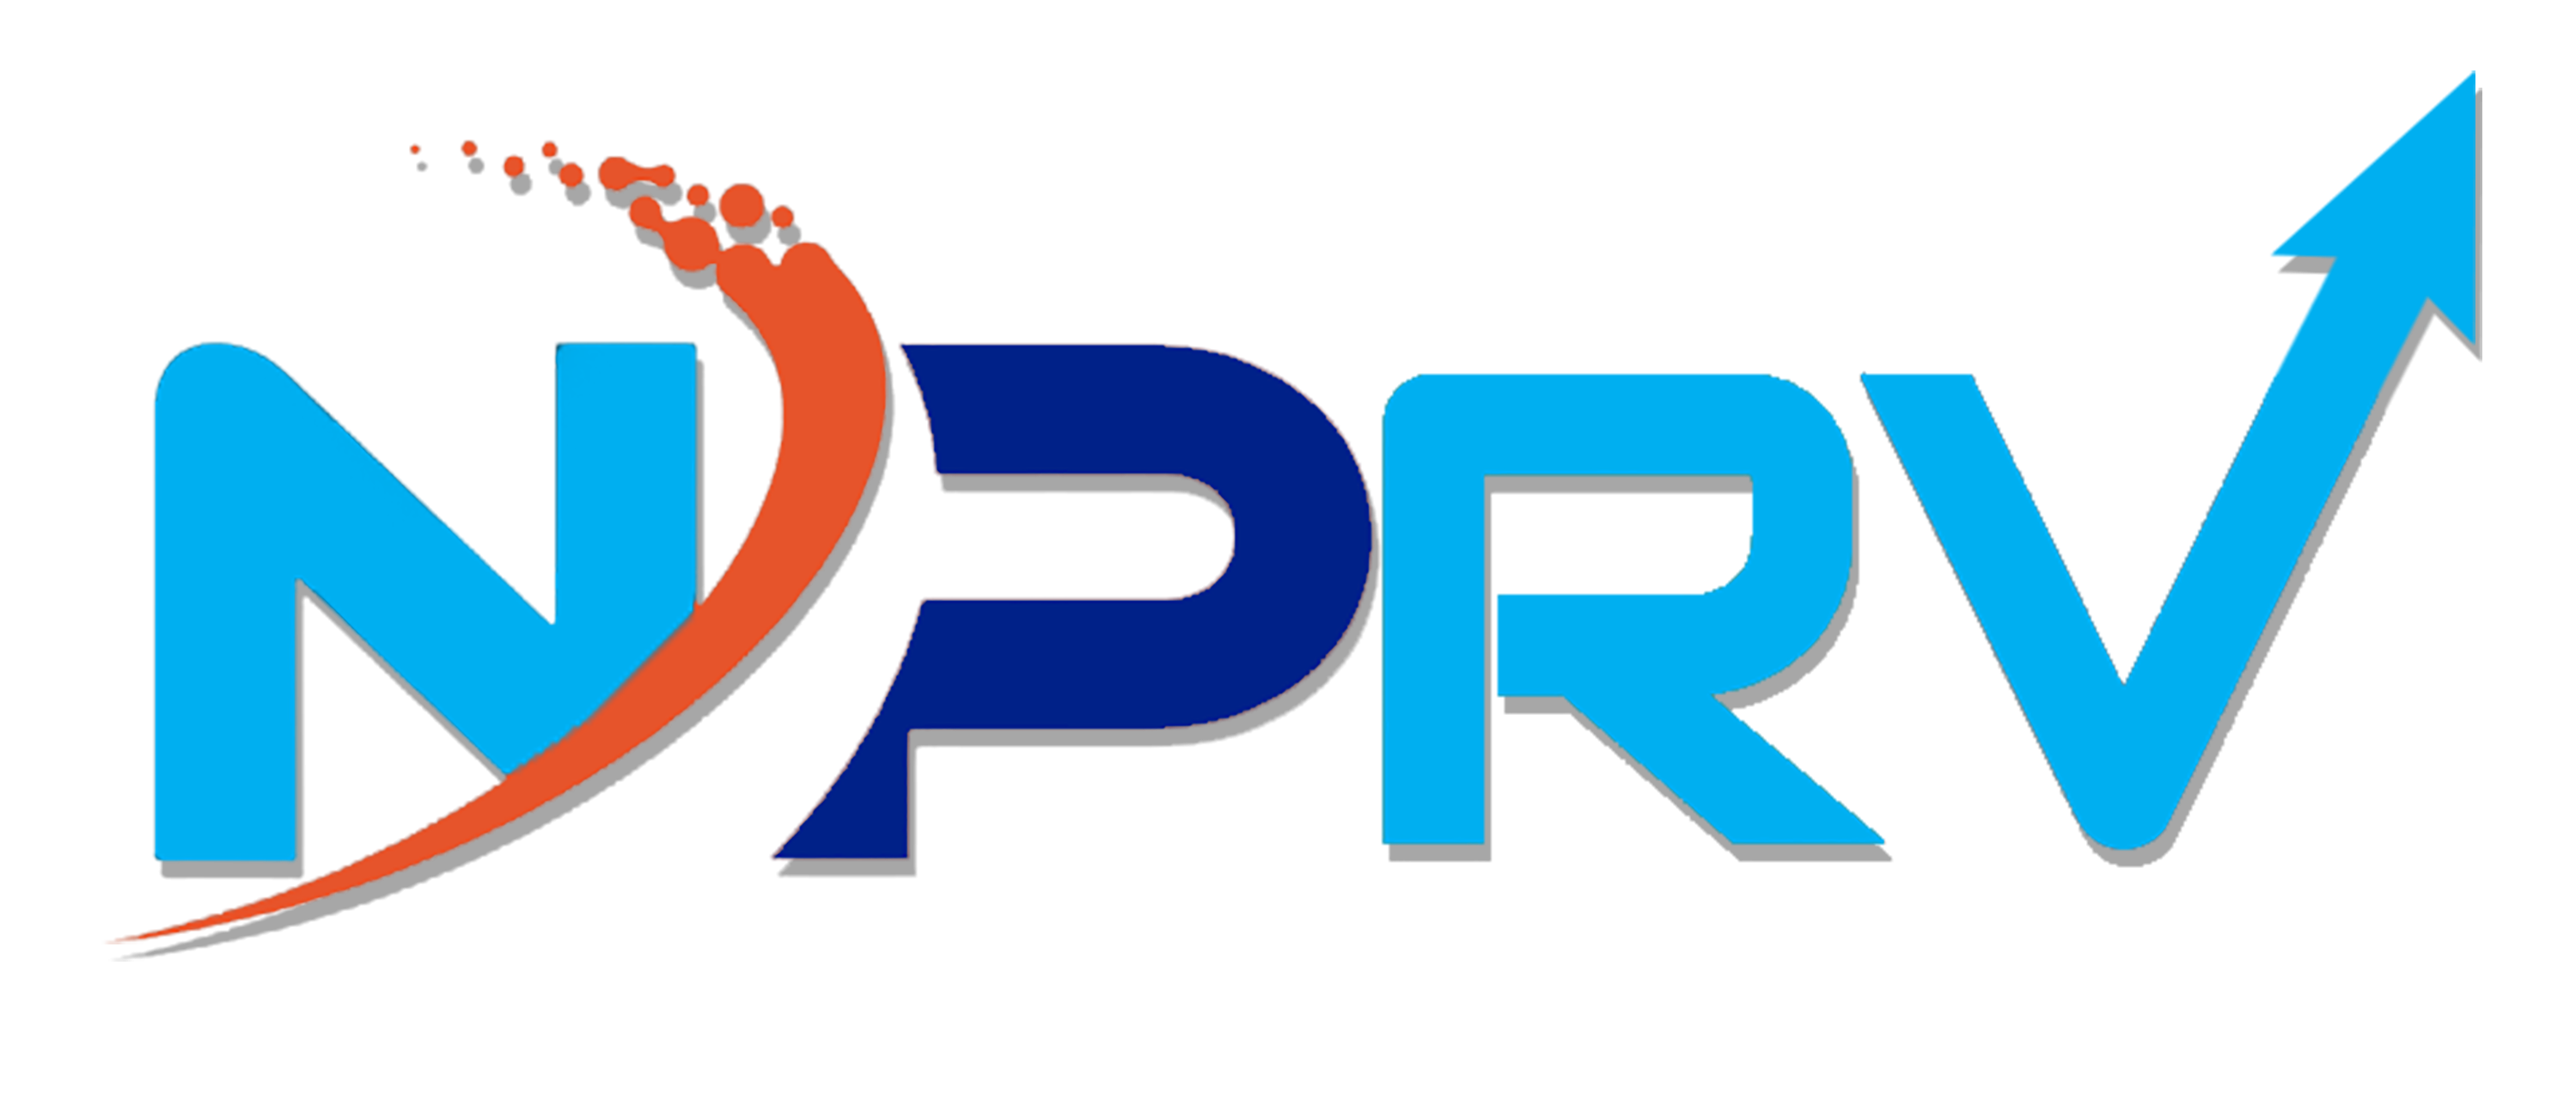 NPRV Advisors Private Limited Logo